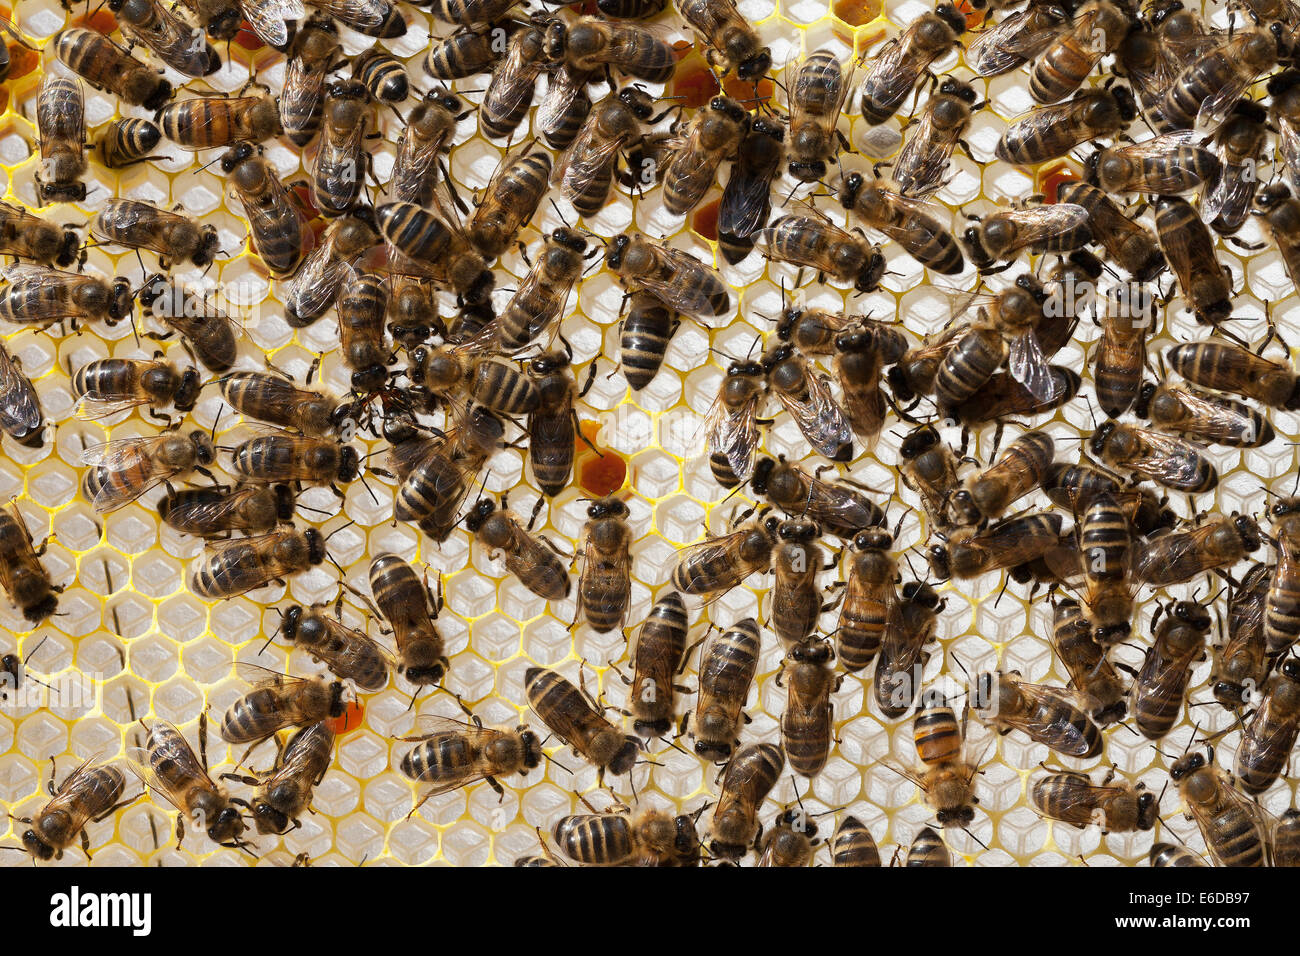 Les ouvrières du miel anglais dans un tout nouveau bâtiment de la ruche miel avec du pollen orange étant inséré au hasard à travers les cellules. UK Banque D'Images